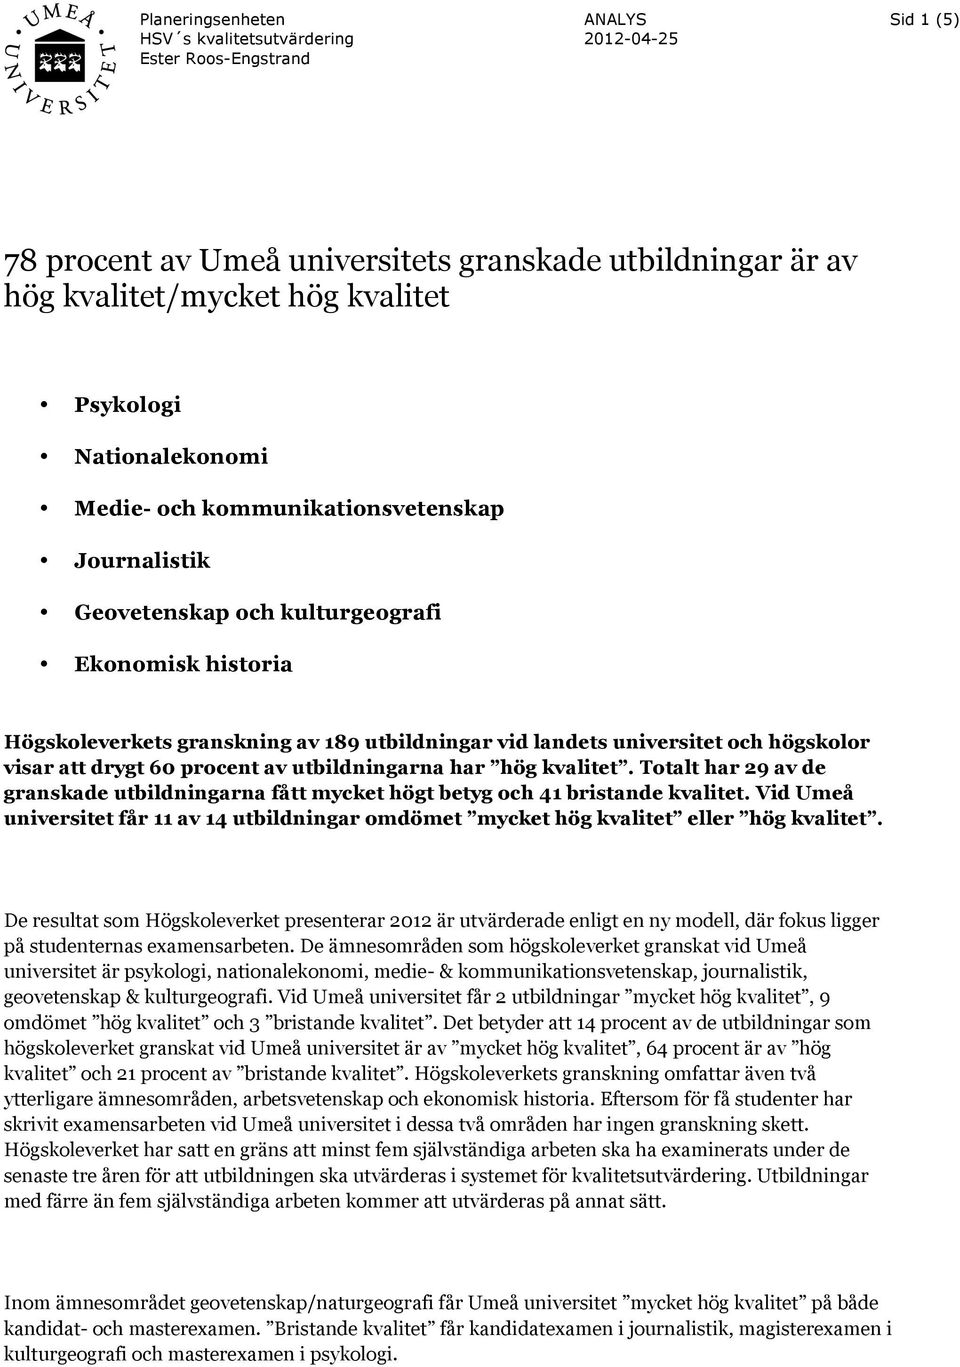 Totalt har 29 av de granskade utbildningarna fått mycket högt betyg och 41 bristande kvalitet. Vid Umeå universitet får 11 av 14 utbildningar omdömet mycket hög kvalitet eller hög kvalitet.